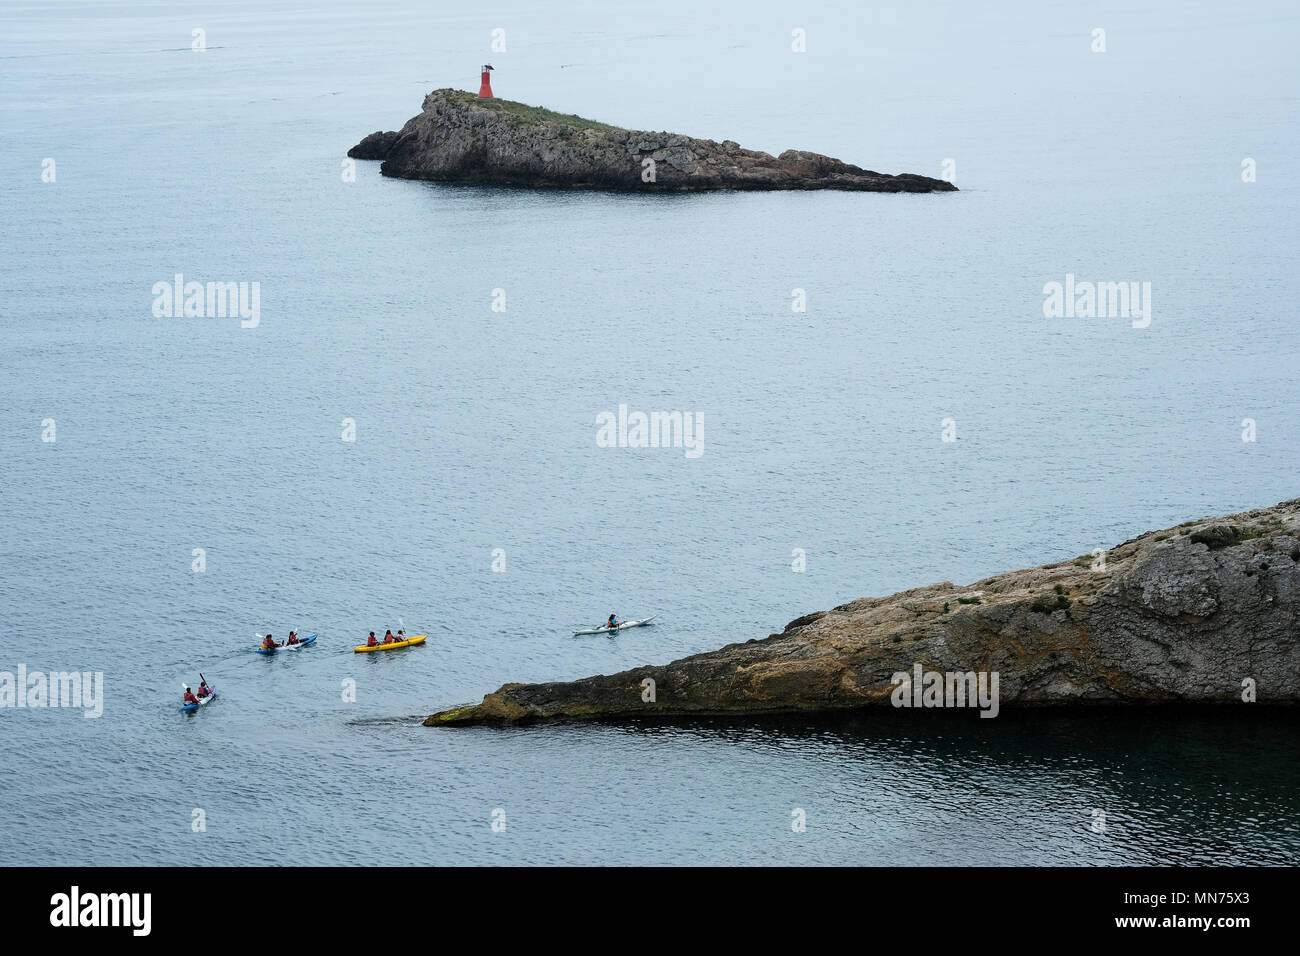 Les kayakistes explorer les eaux de la Méditerranée. L'île d'Ibiza. Îles Baléares. Espagne Banque D'Images